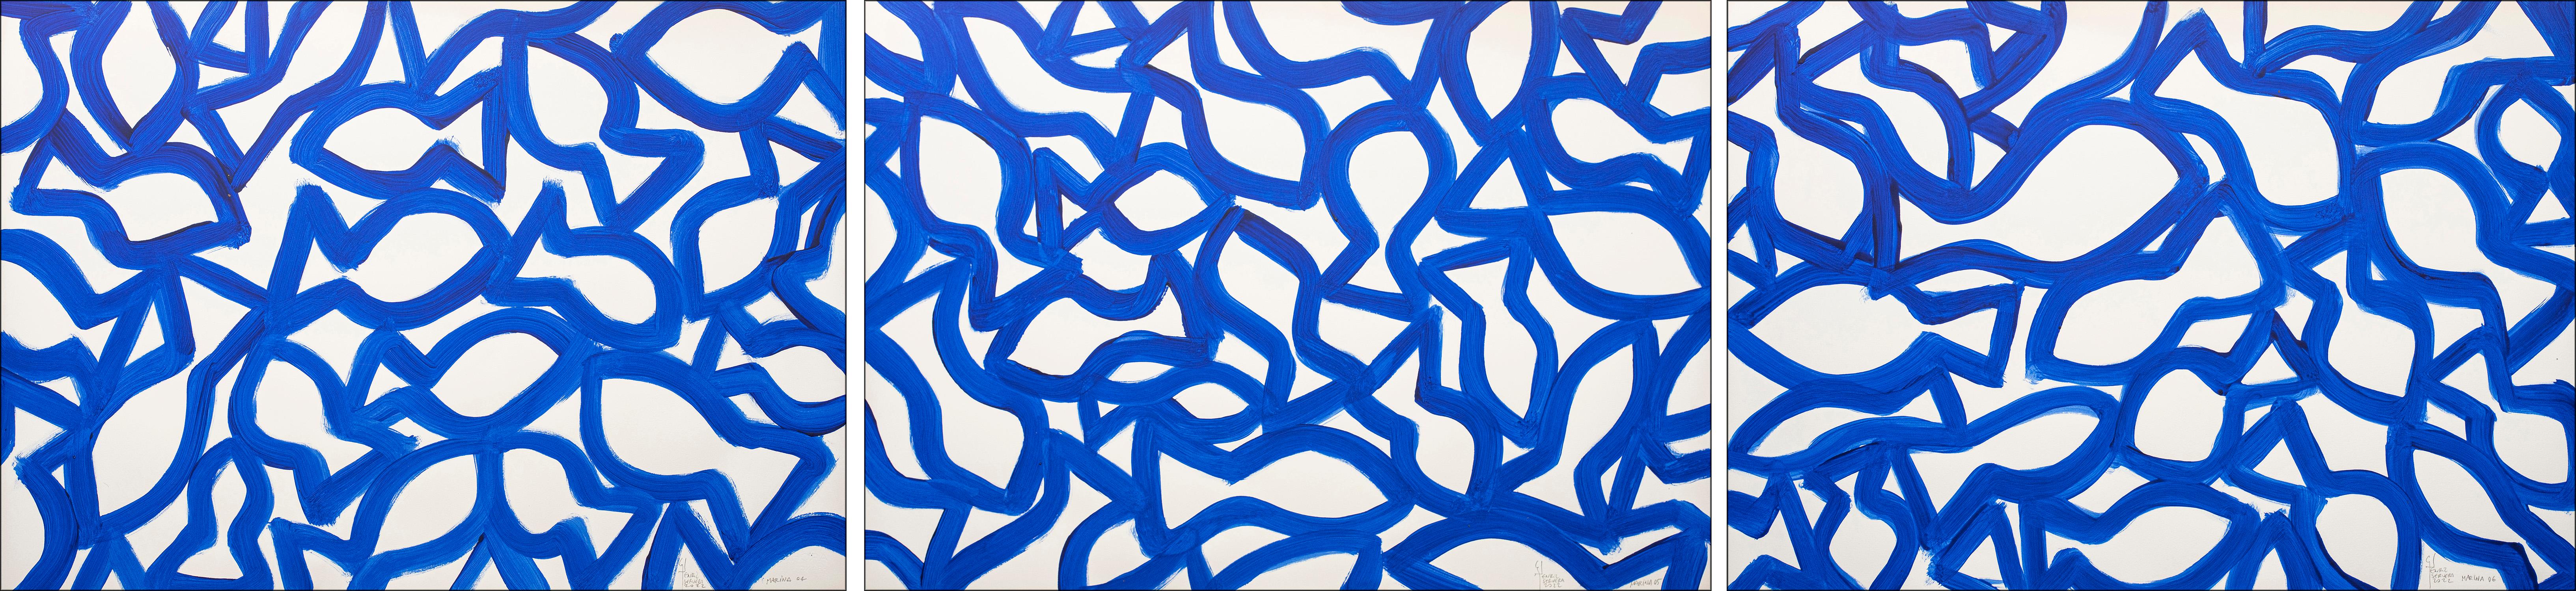 Triptyque Marina, formes de poissons abstraites sur papier, motif bleu et blanc méditerranéen